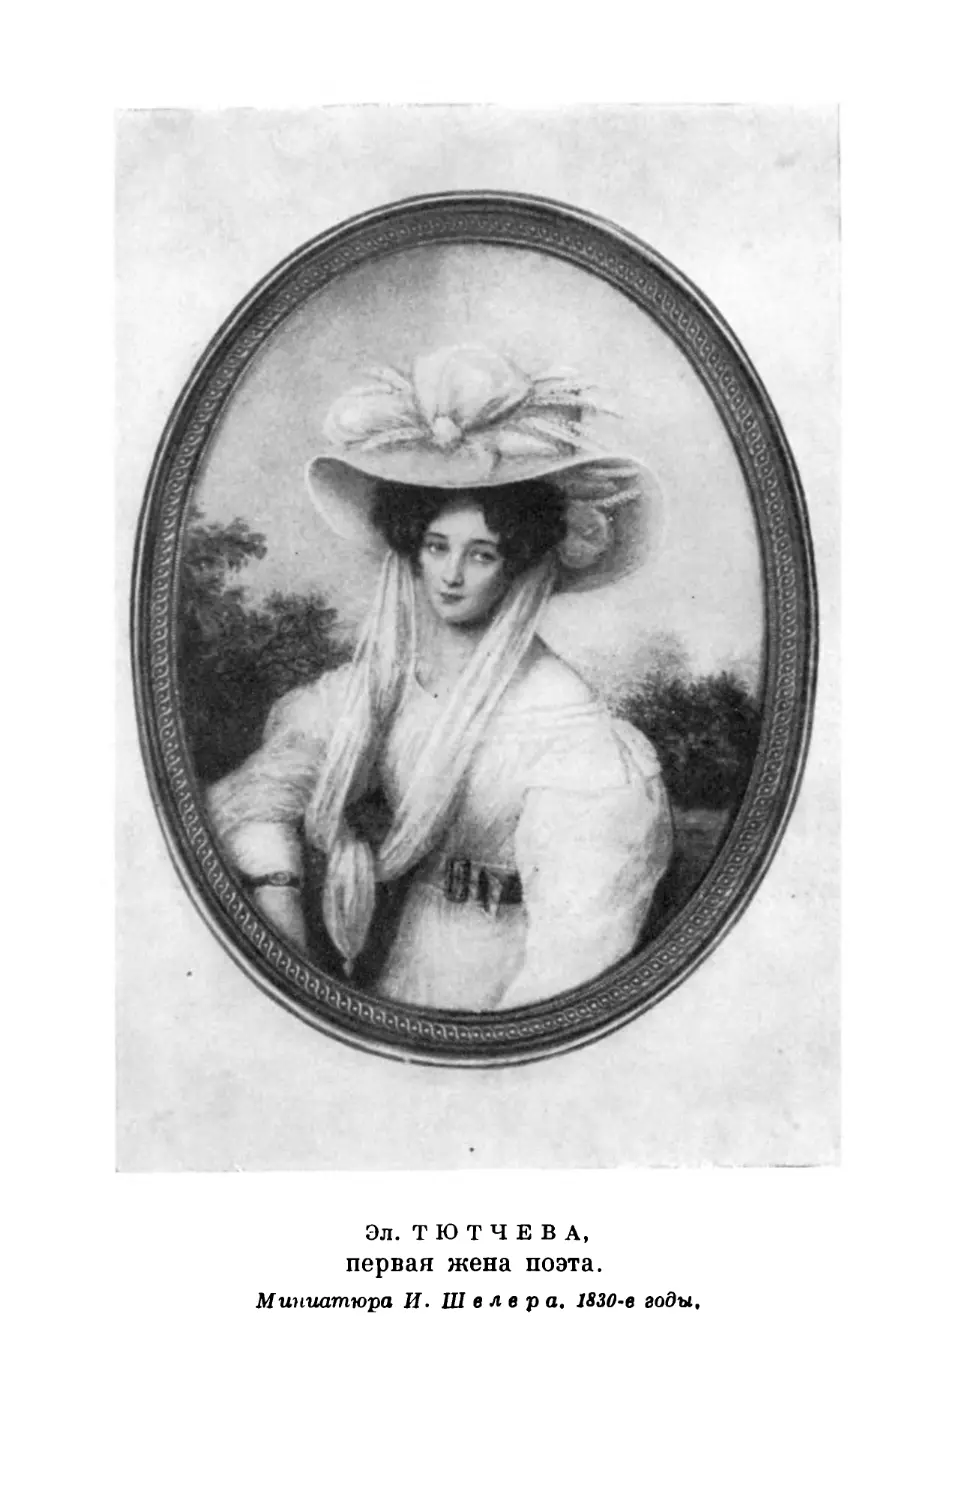 Вклейка. Эл. Тютчева, первая жена поэта. Миниатюра работы И. Шелера. 1830-е годы.